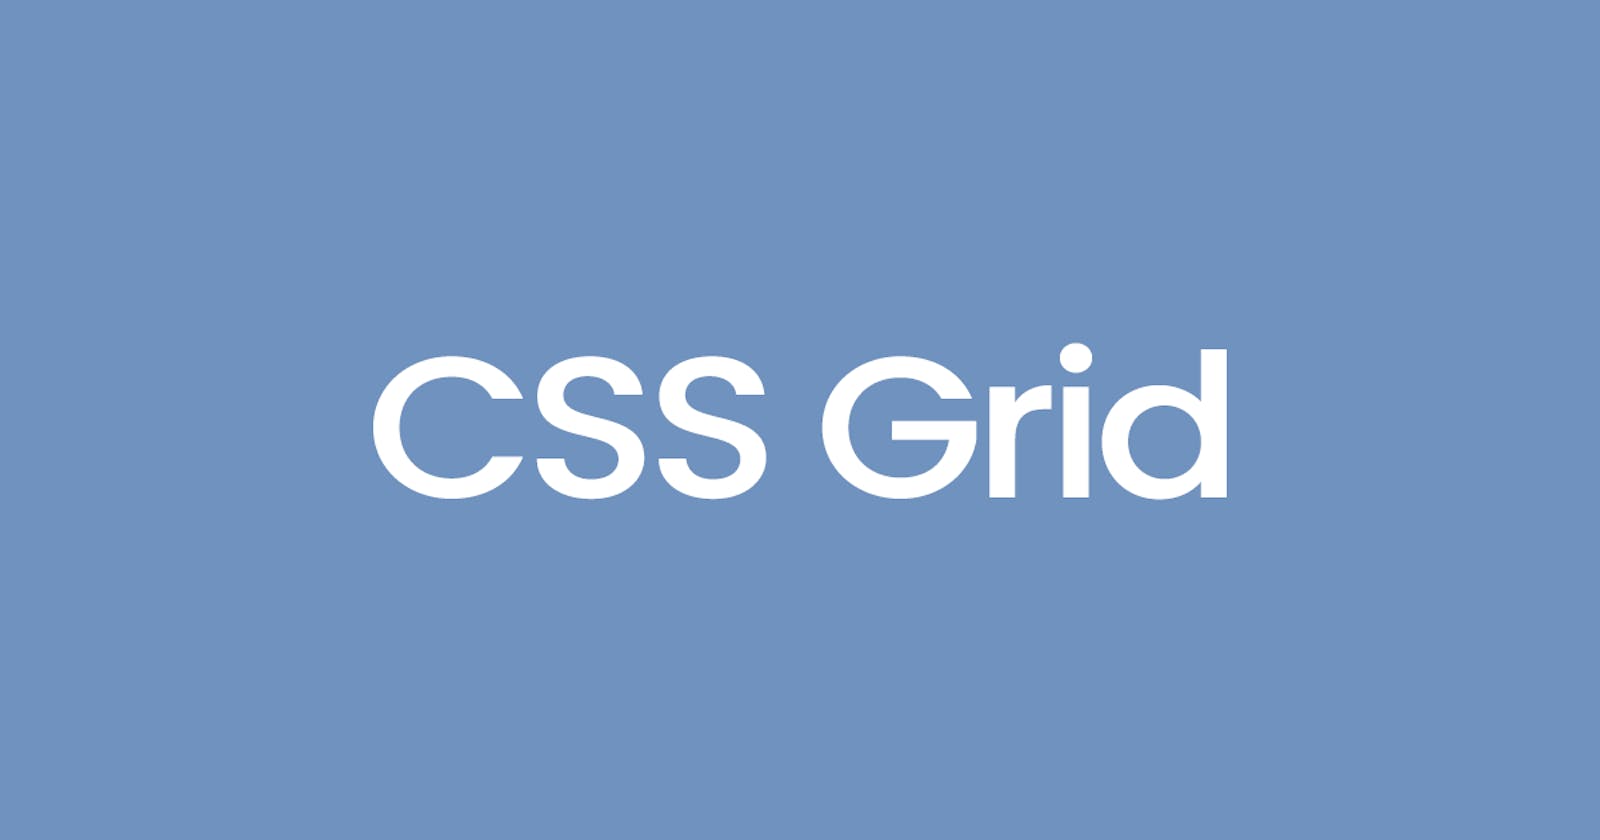 CSS Grid Summary